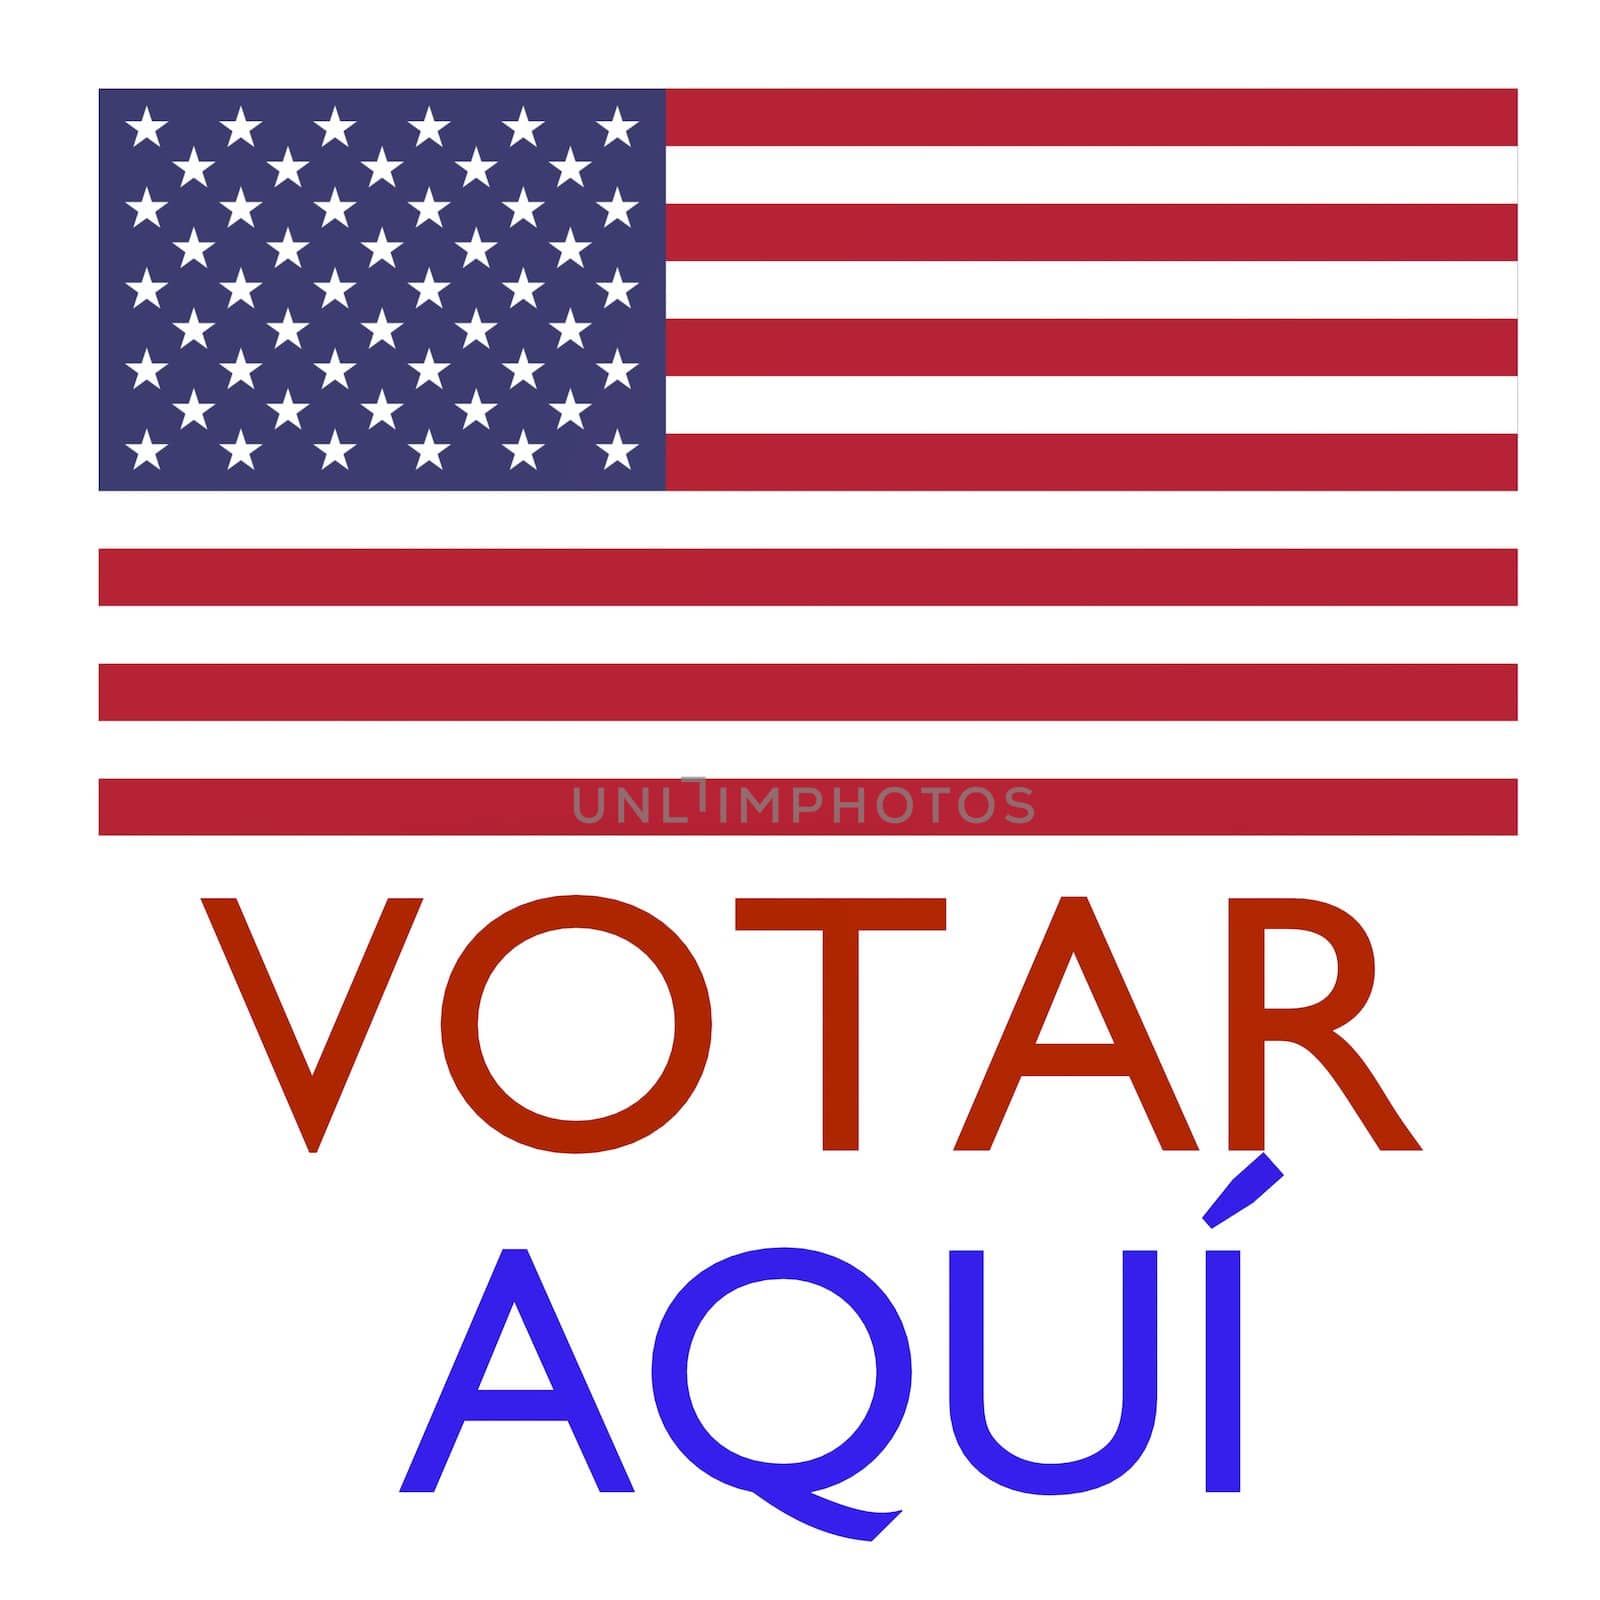 Votar Aqui Vote here in spanish by connelld